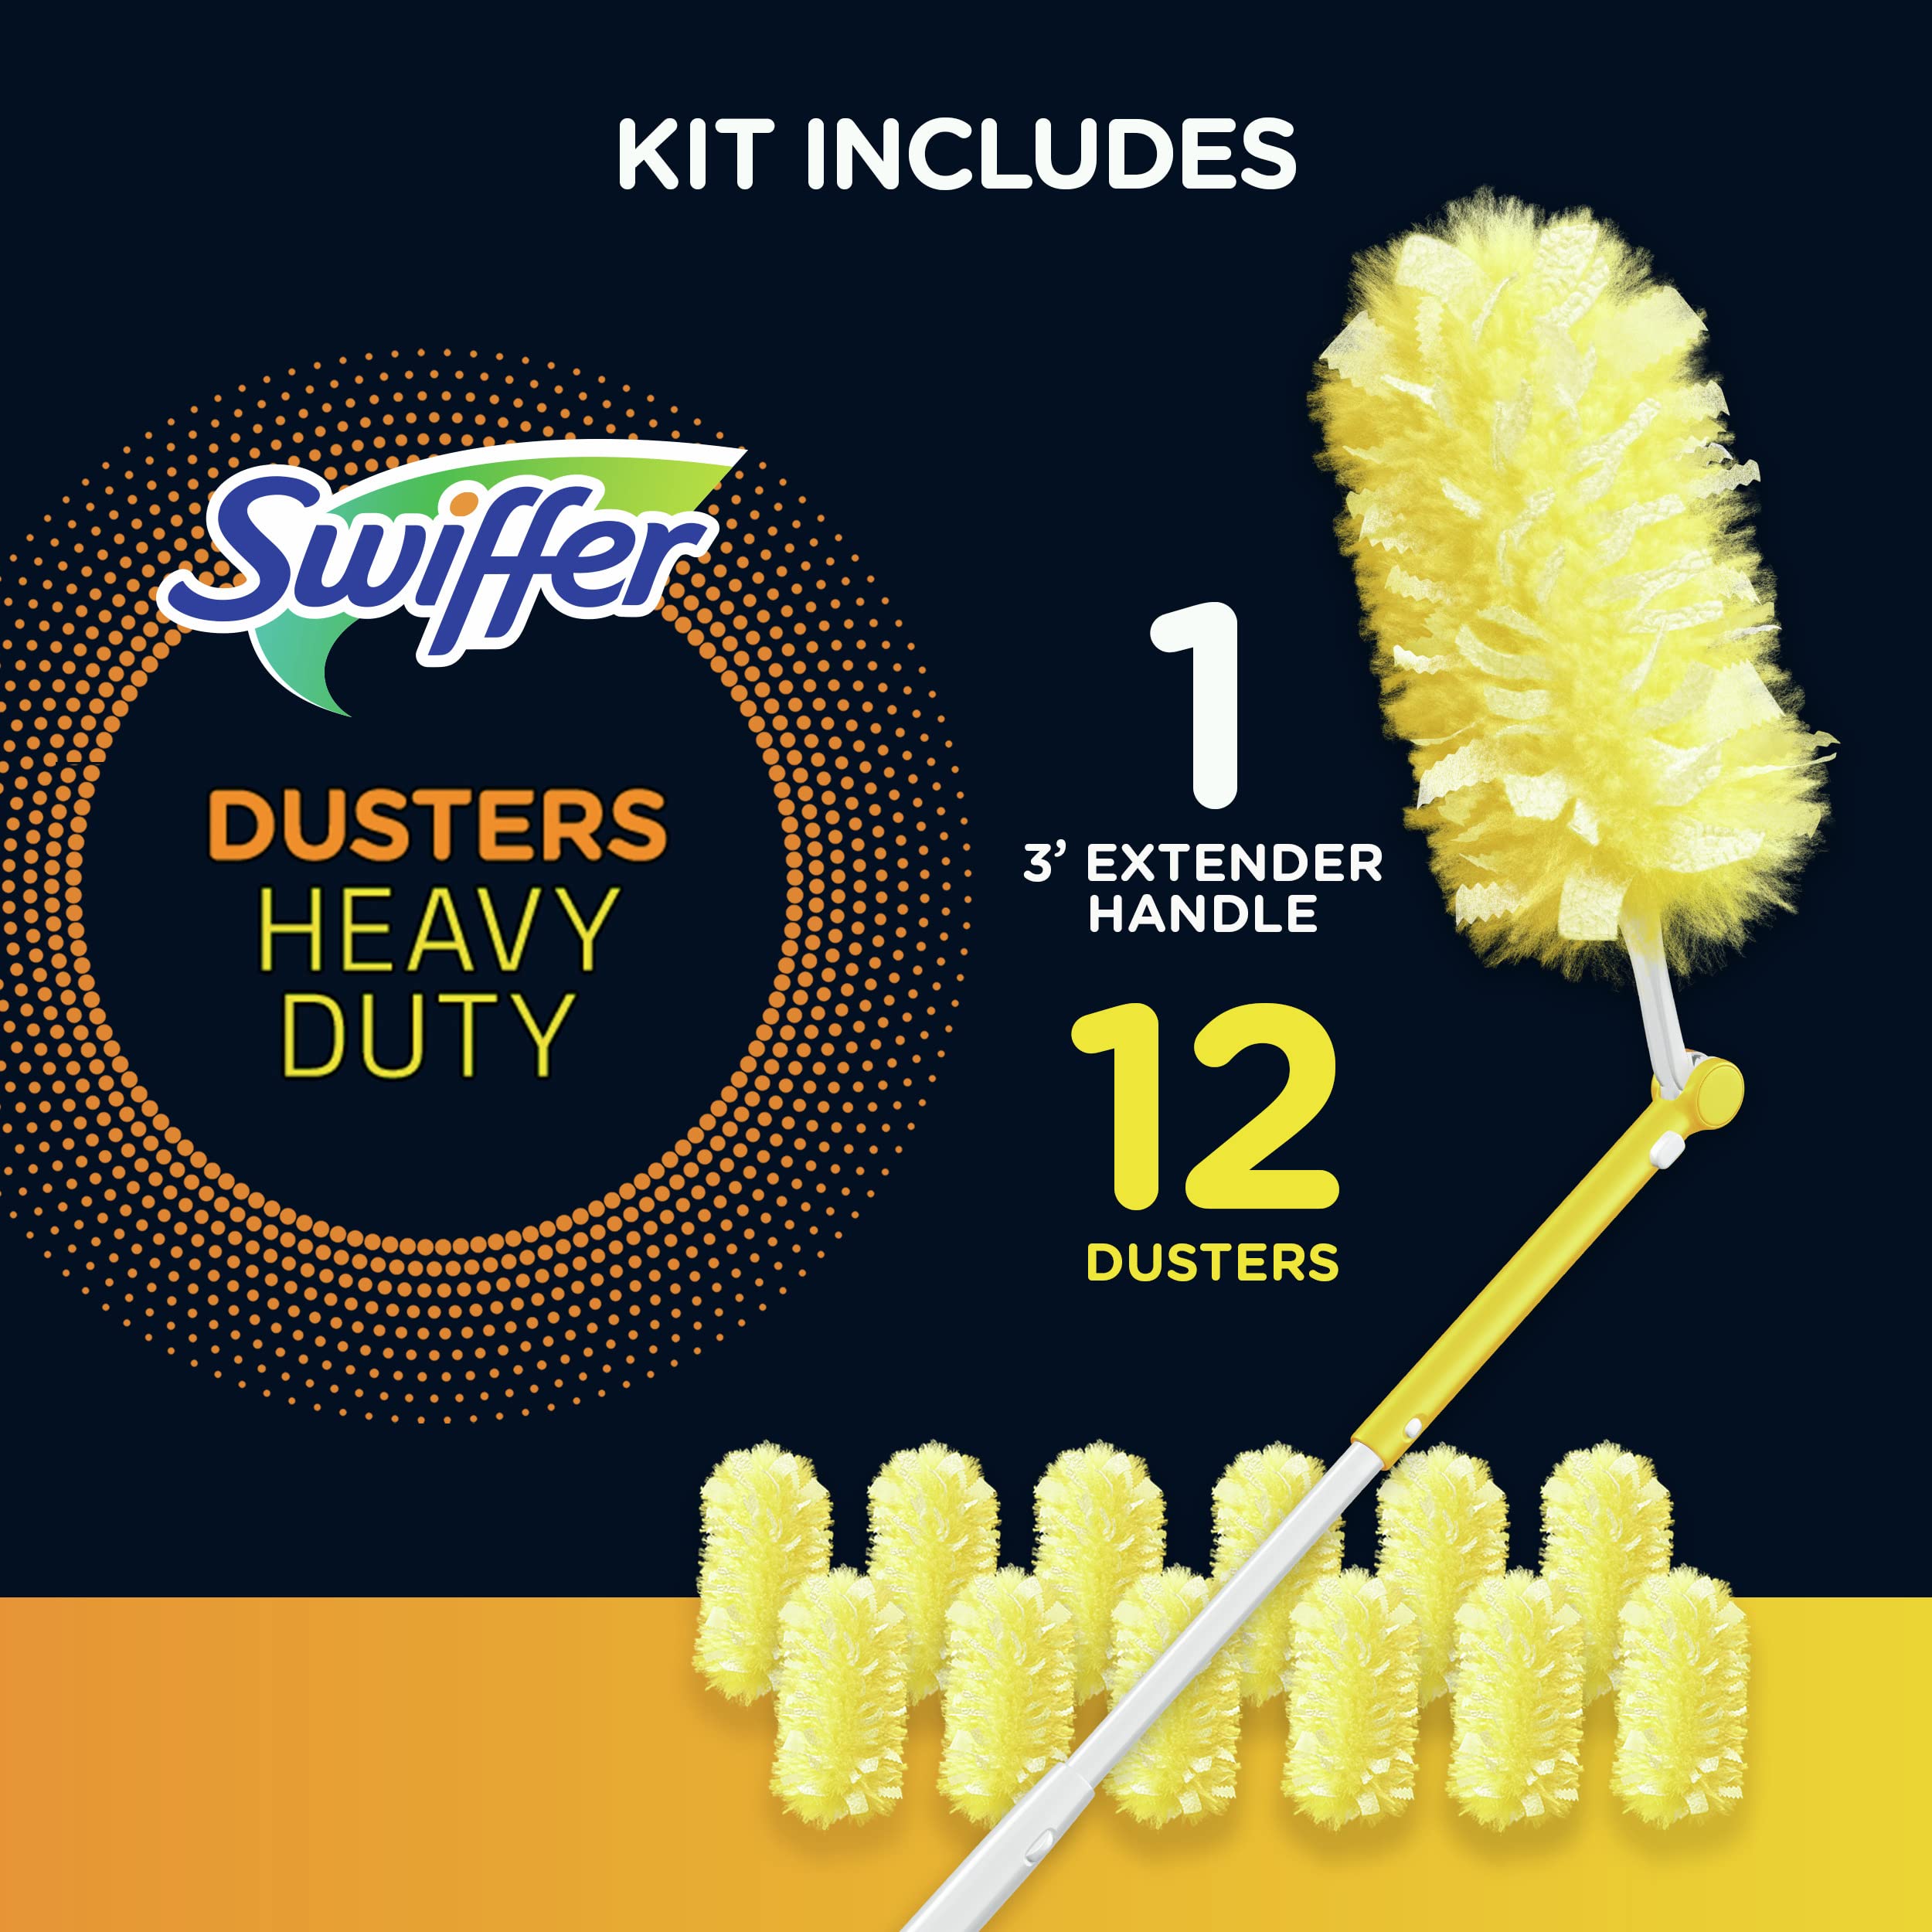 Swiffer Dusters Heavy Duty Extender Handle Starter Kit (1 Handle, 12 Dusters)